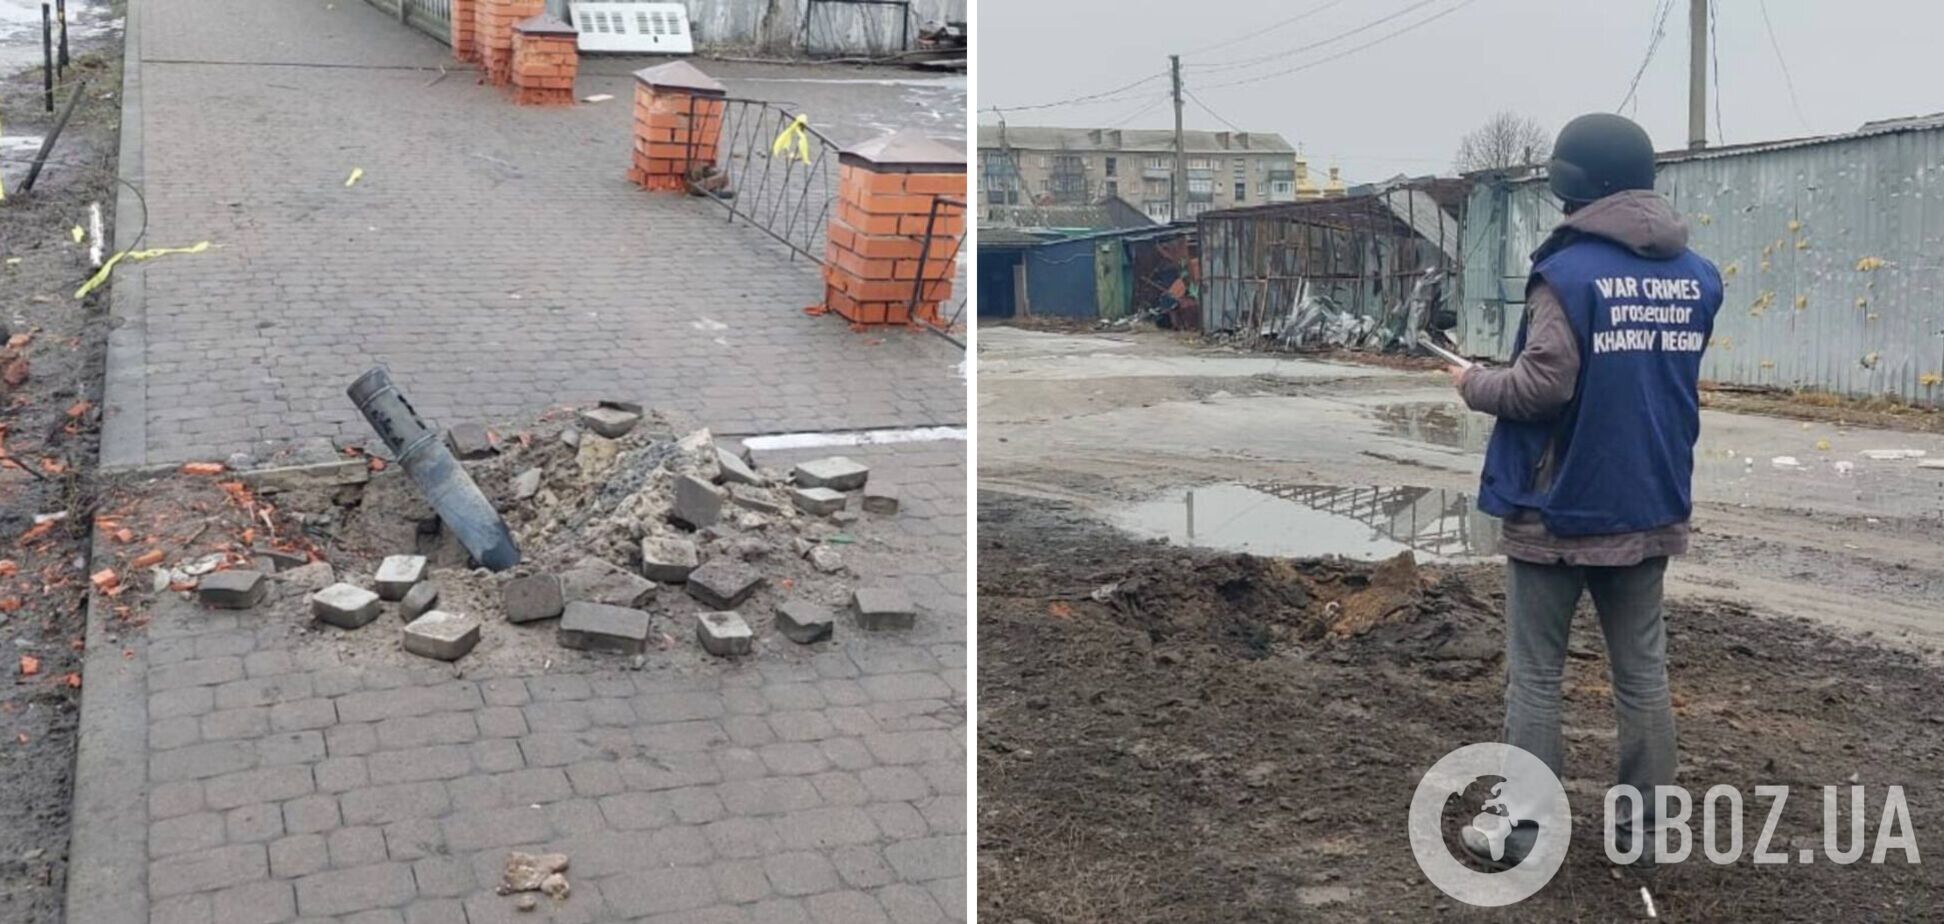 Россияне обстреляли рынок в Волчанске: погибла мирная жительница. Фото